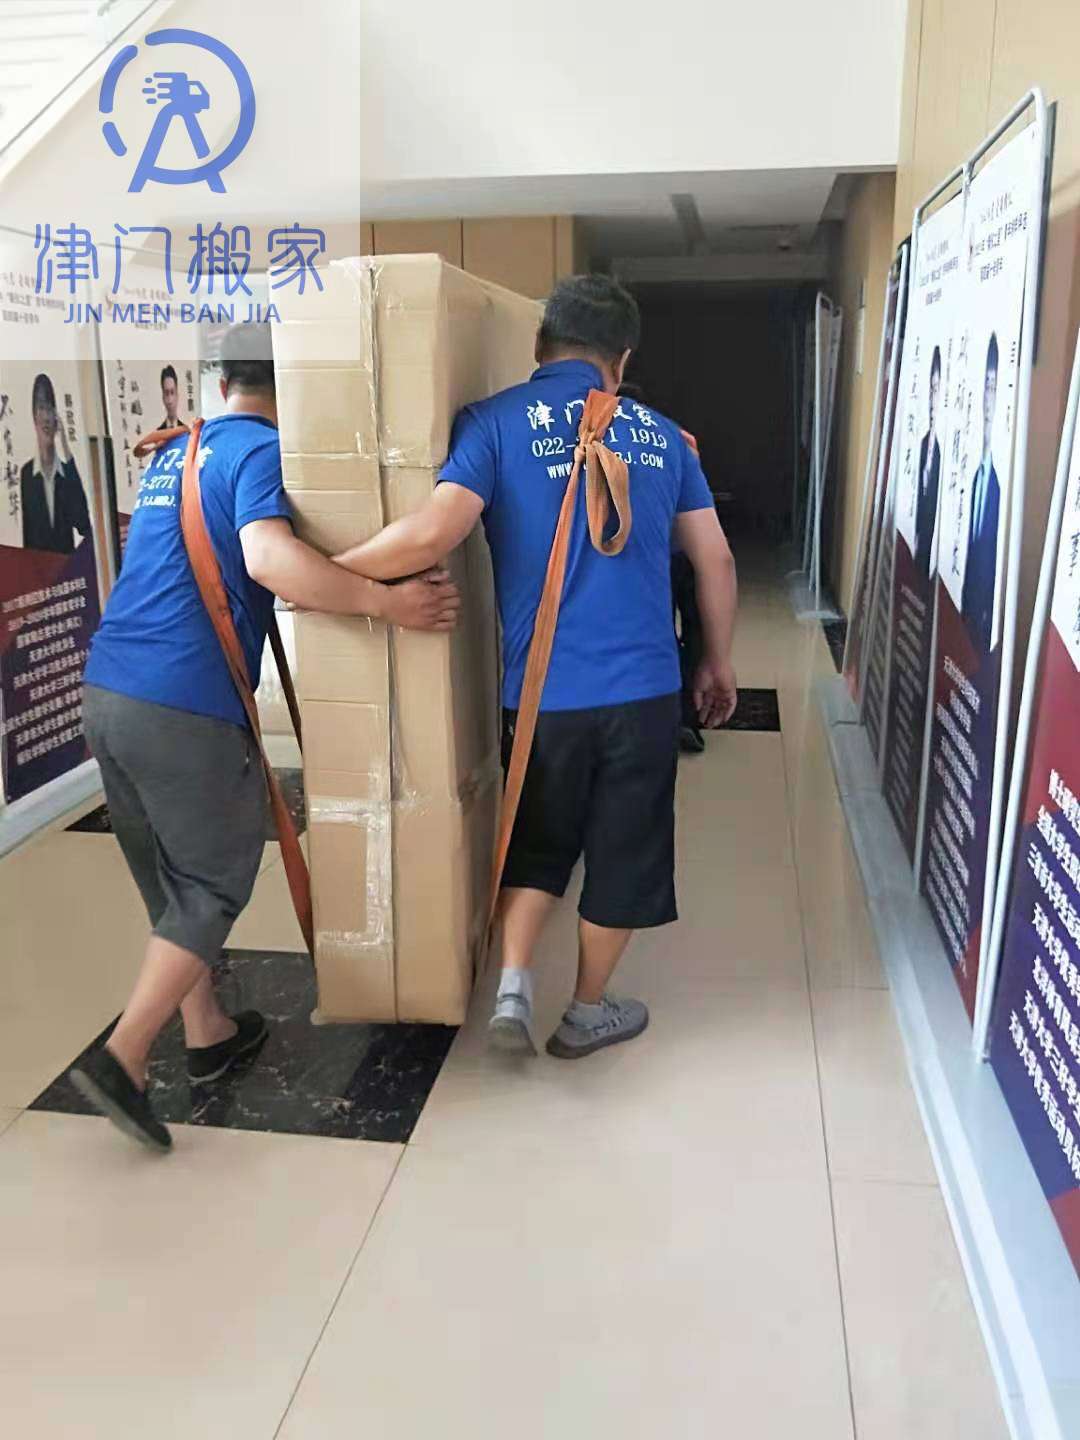 津門搬家員工正在為天津大學搬運設備